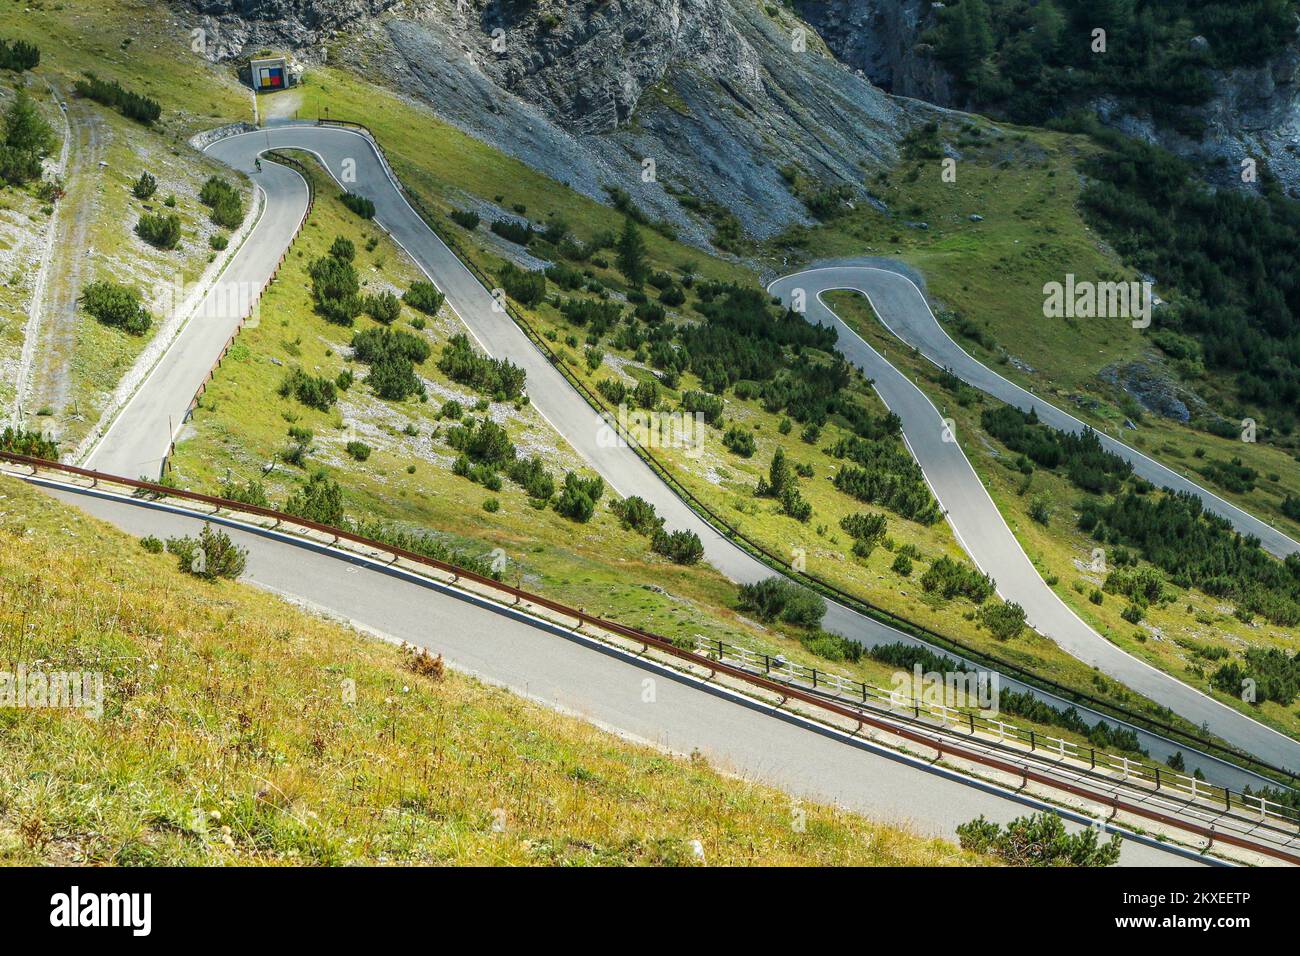 Il dettaglio dei tornanti della strada impegnativa verso il famoso Passo dello Stelvio nelle Alpi italiane, vicino alla Svizzera. Foto Stock